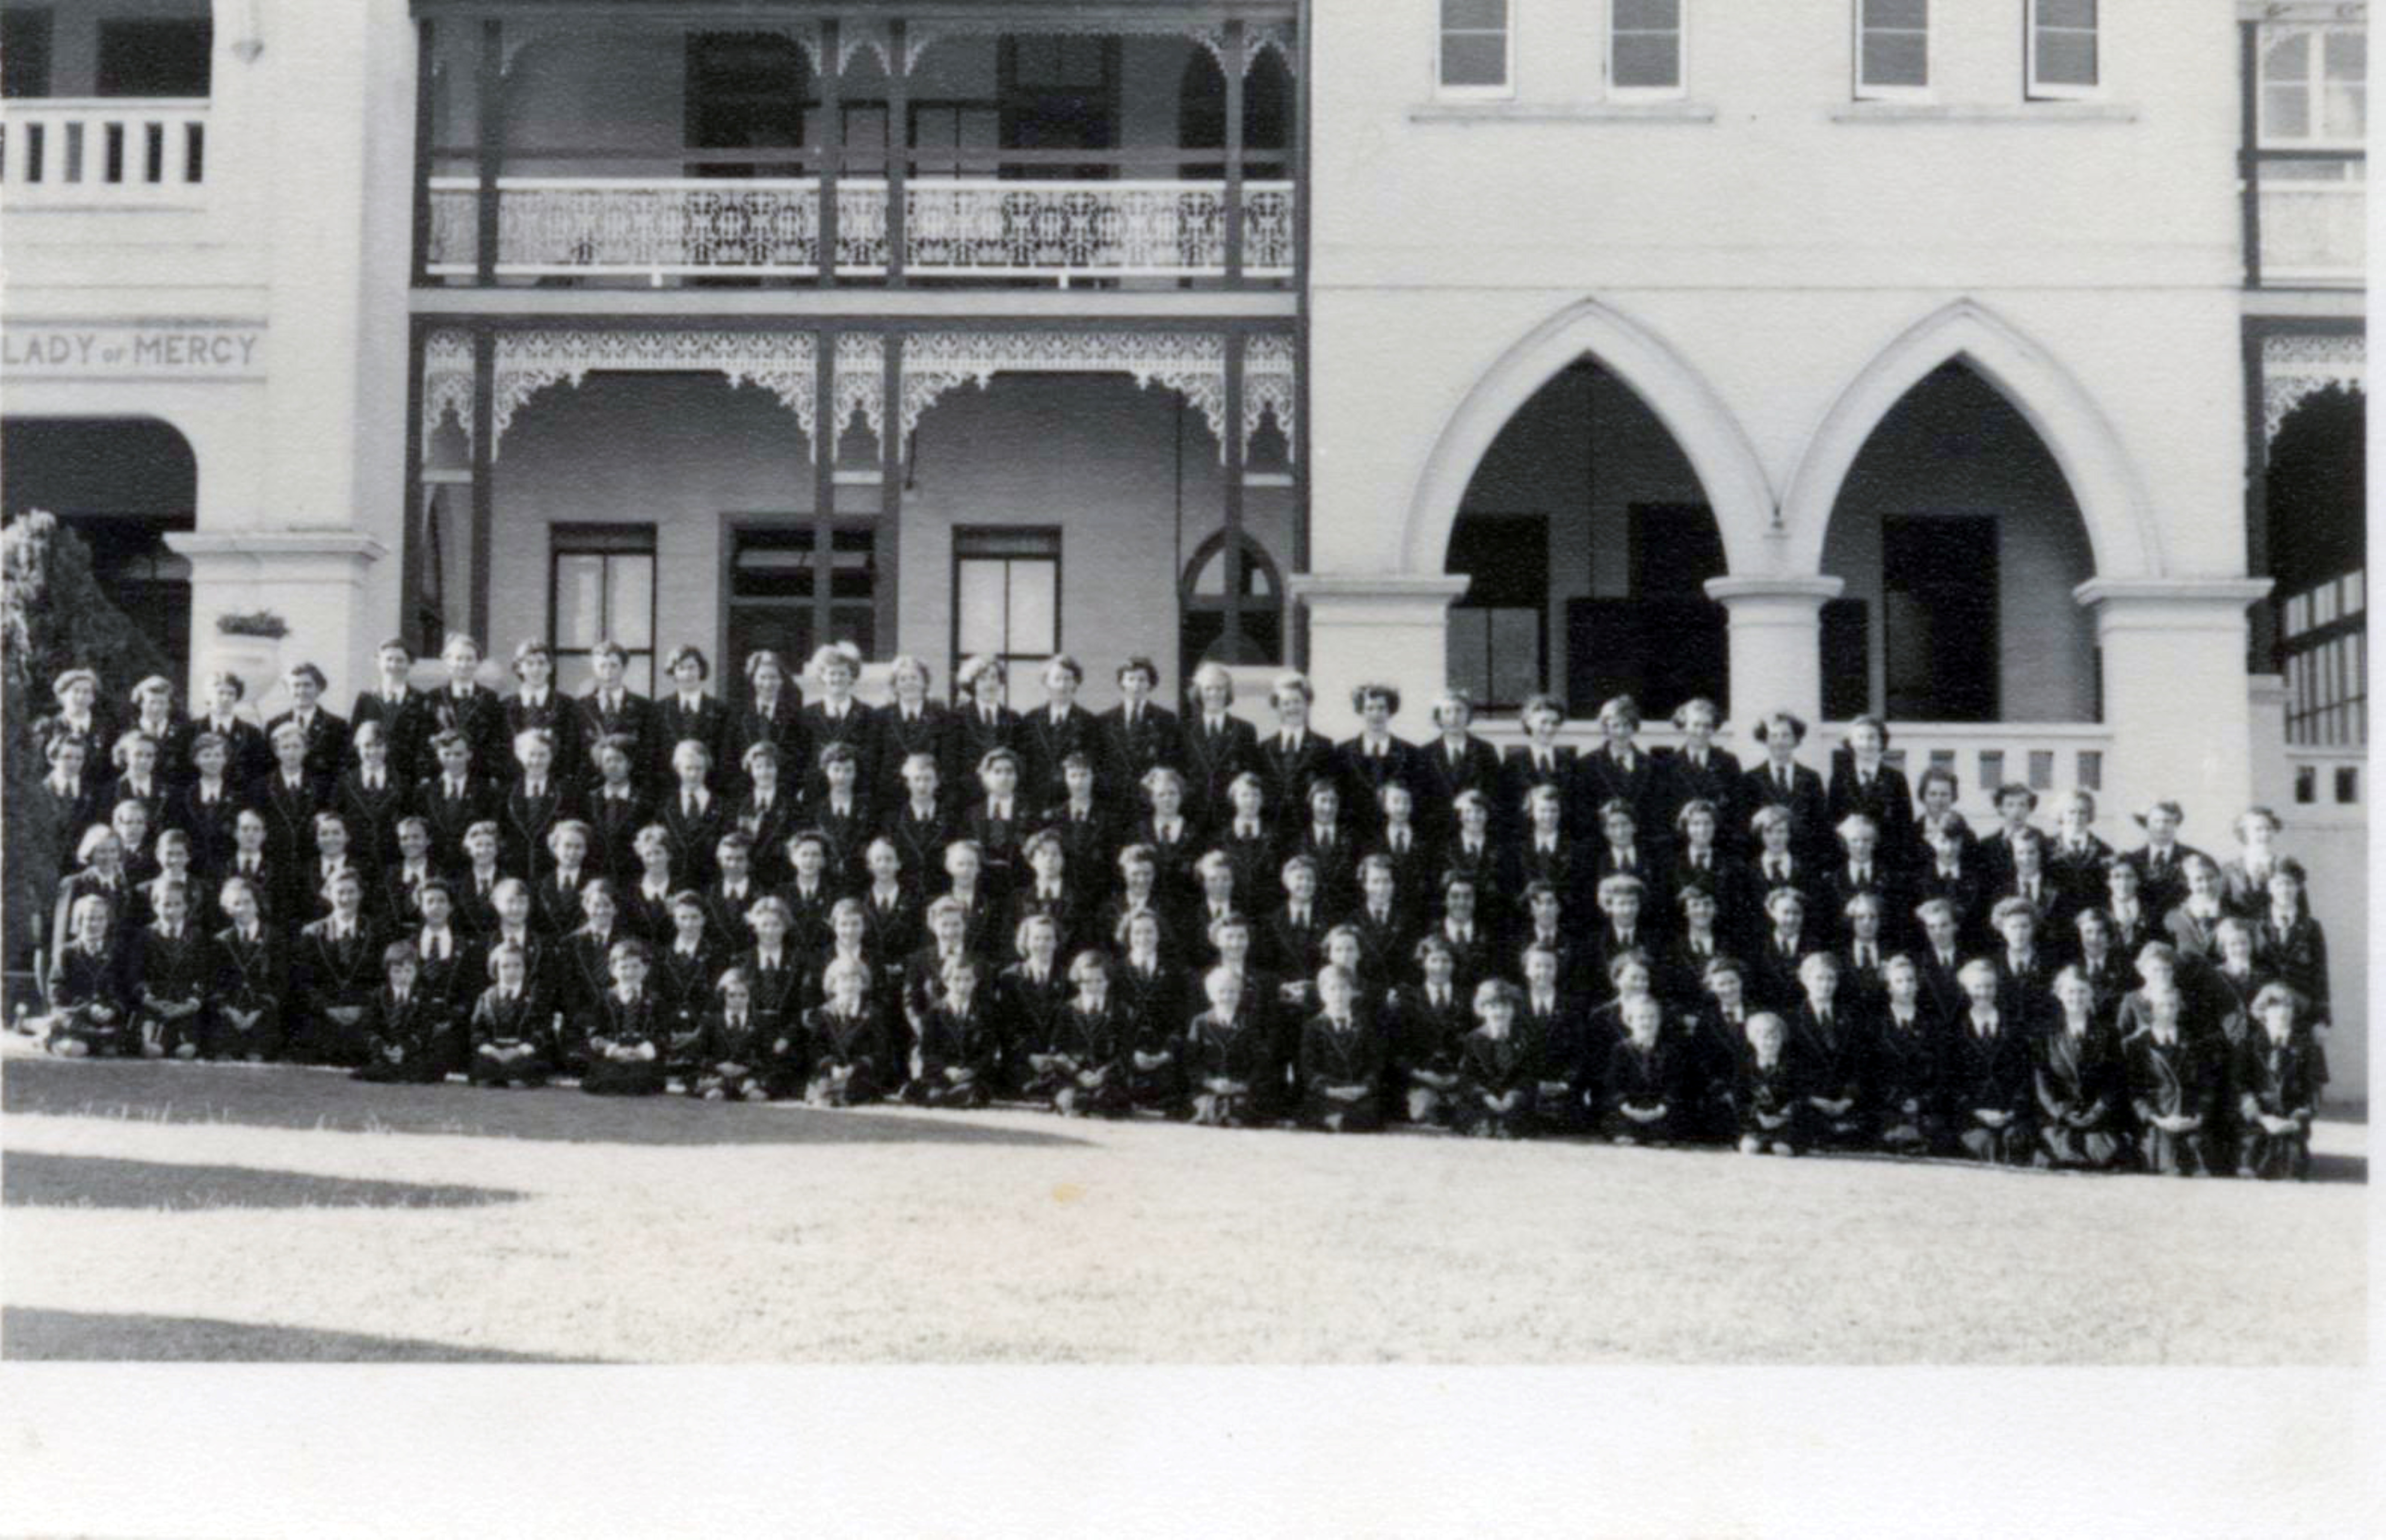 1950's School photo